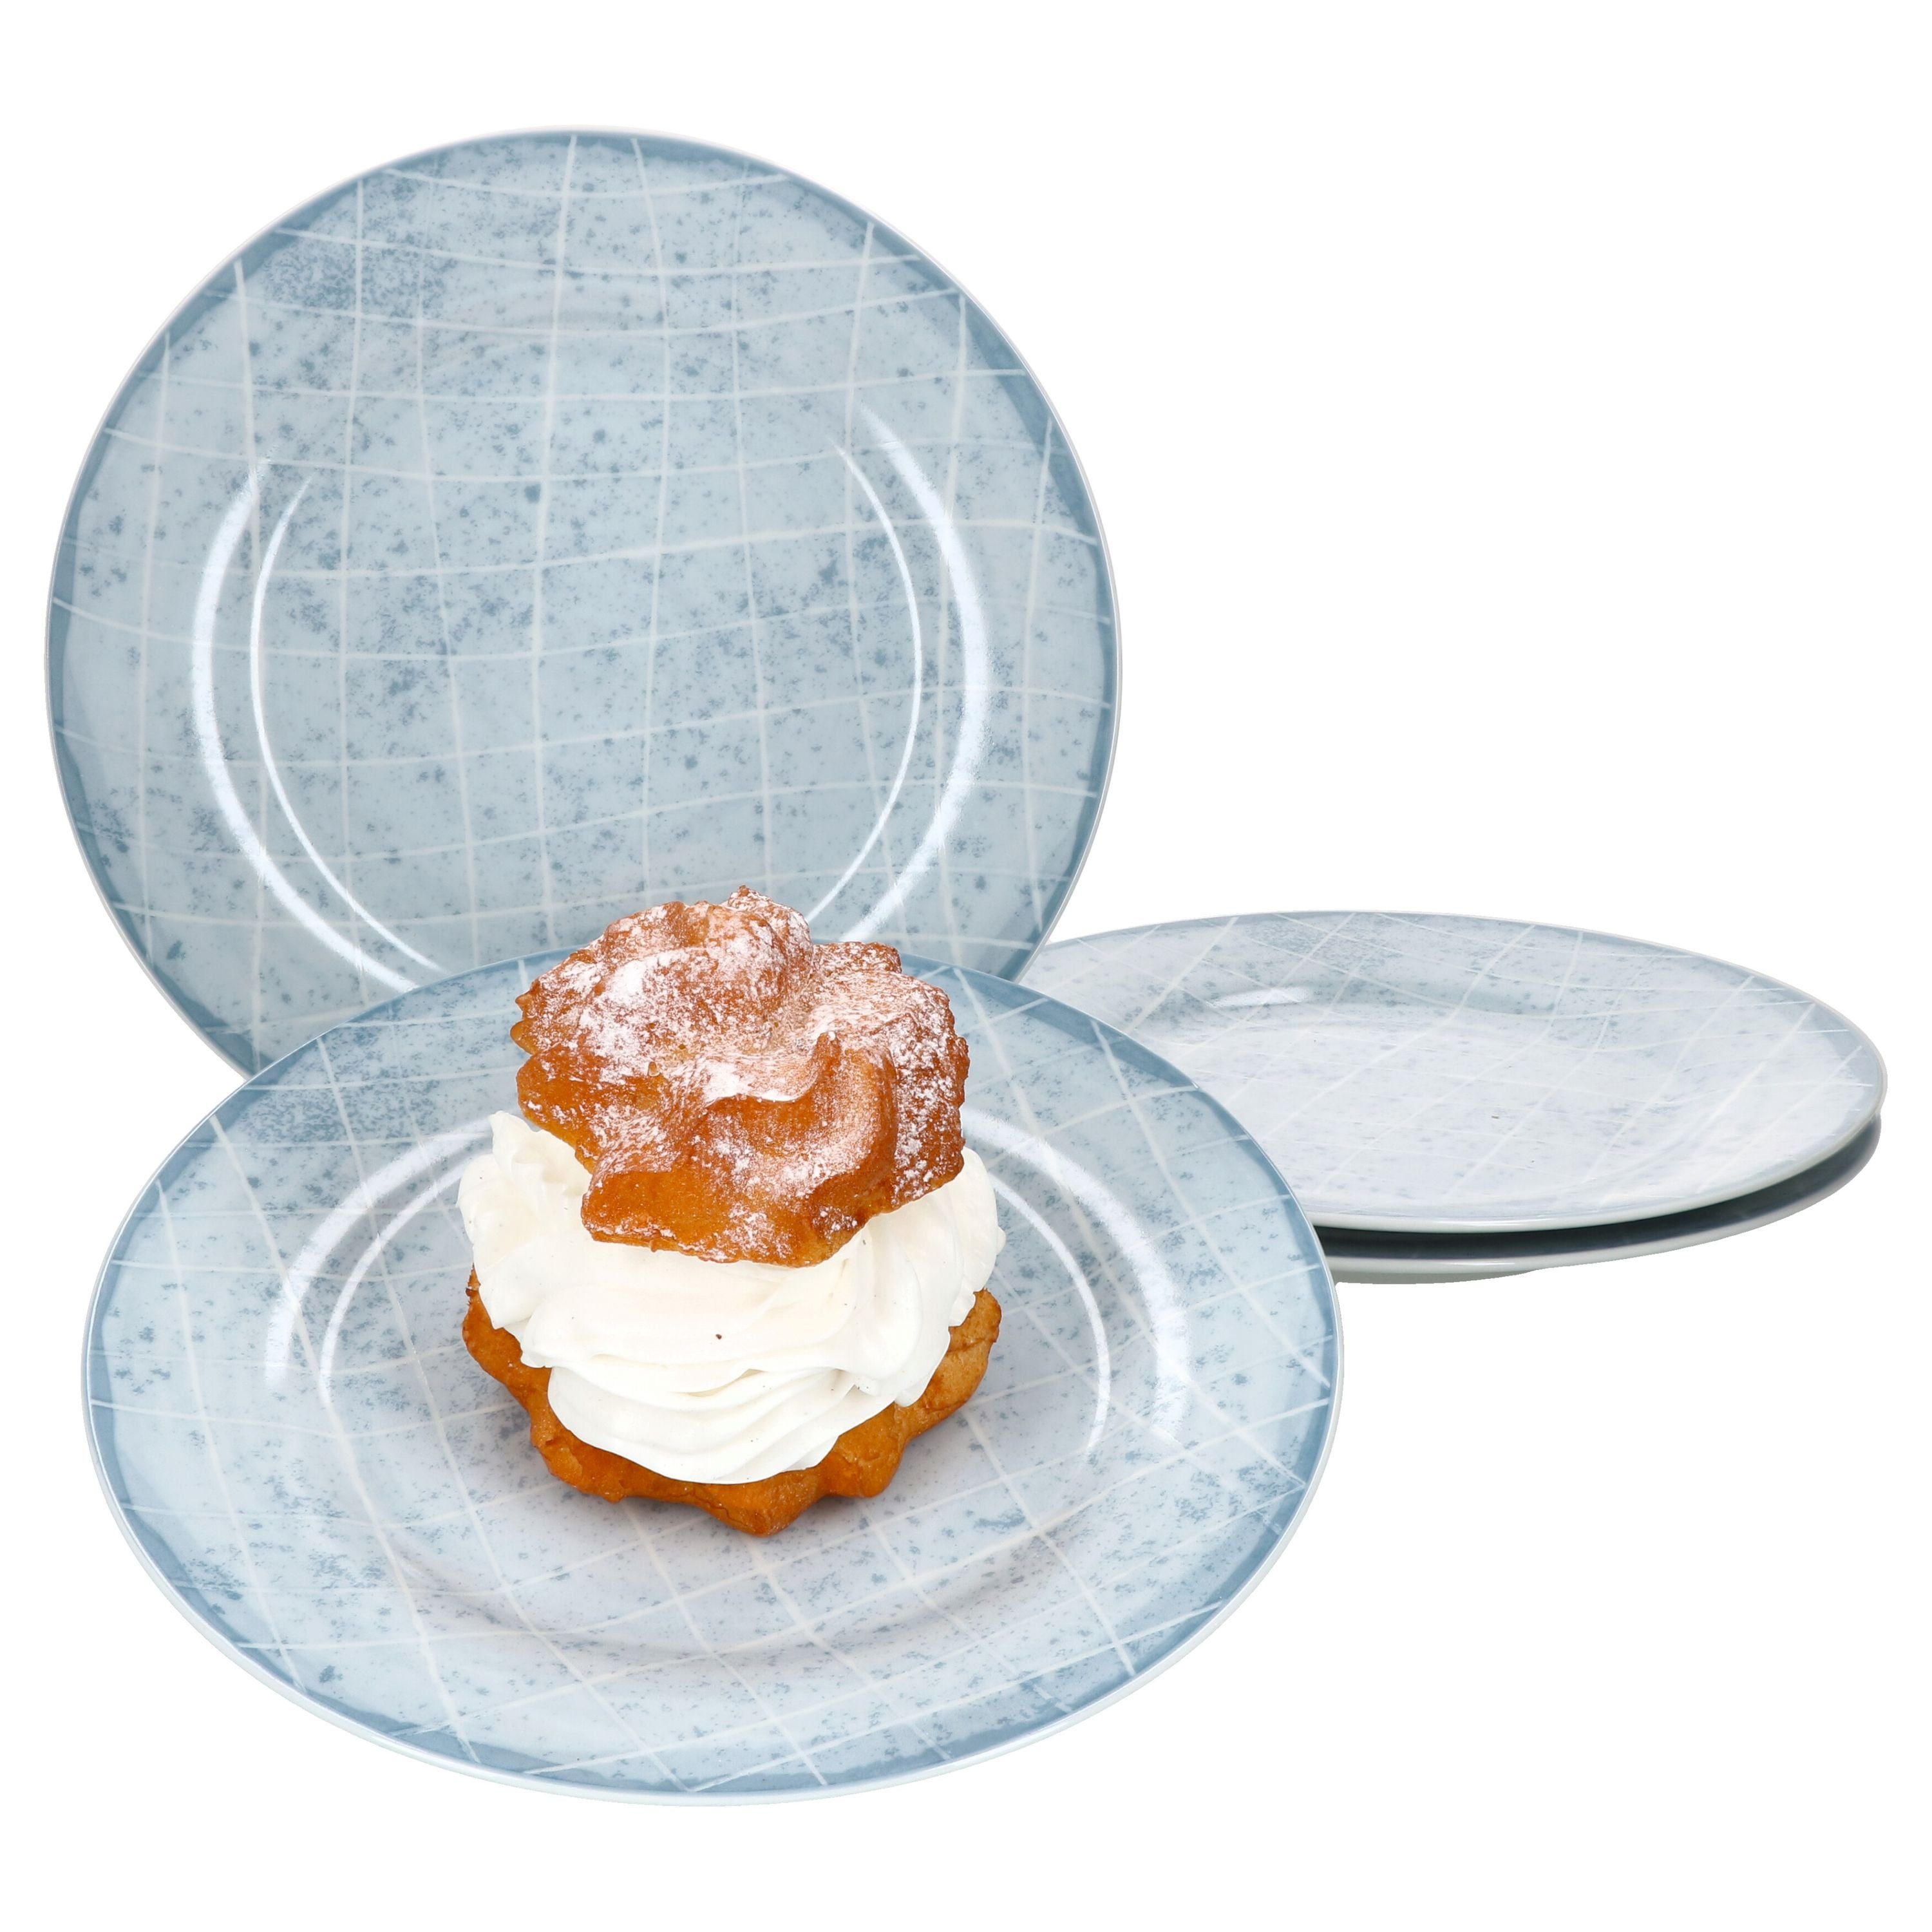 Ritzenhoff & Breker Nordic Kuchenteller 4-er Set Hellblau I Dessert-Teller 20,5 cm I Teller-Service für 4 Personen I hochwertiges Marken-Porzellan mikrowellengeeignet & spülmaschinengeeignet